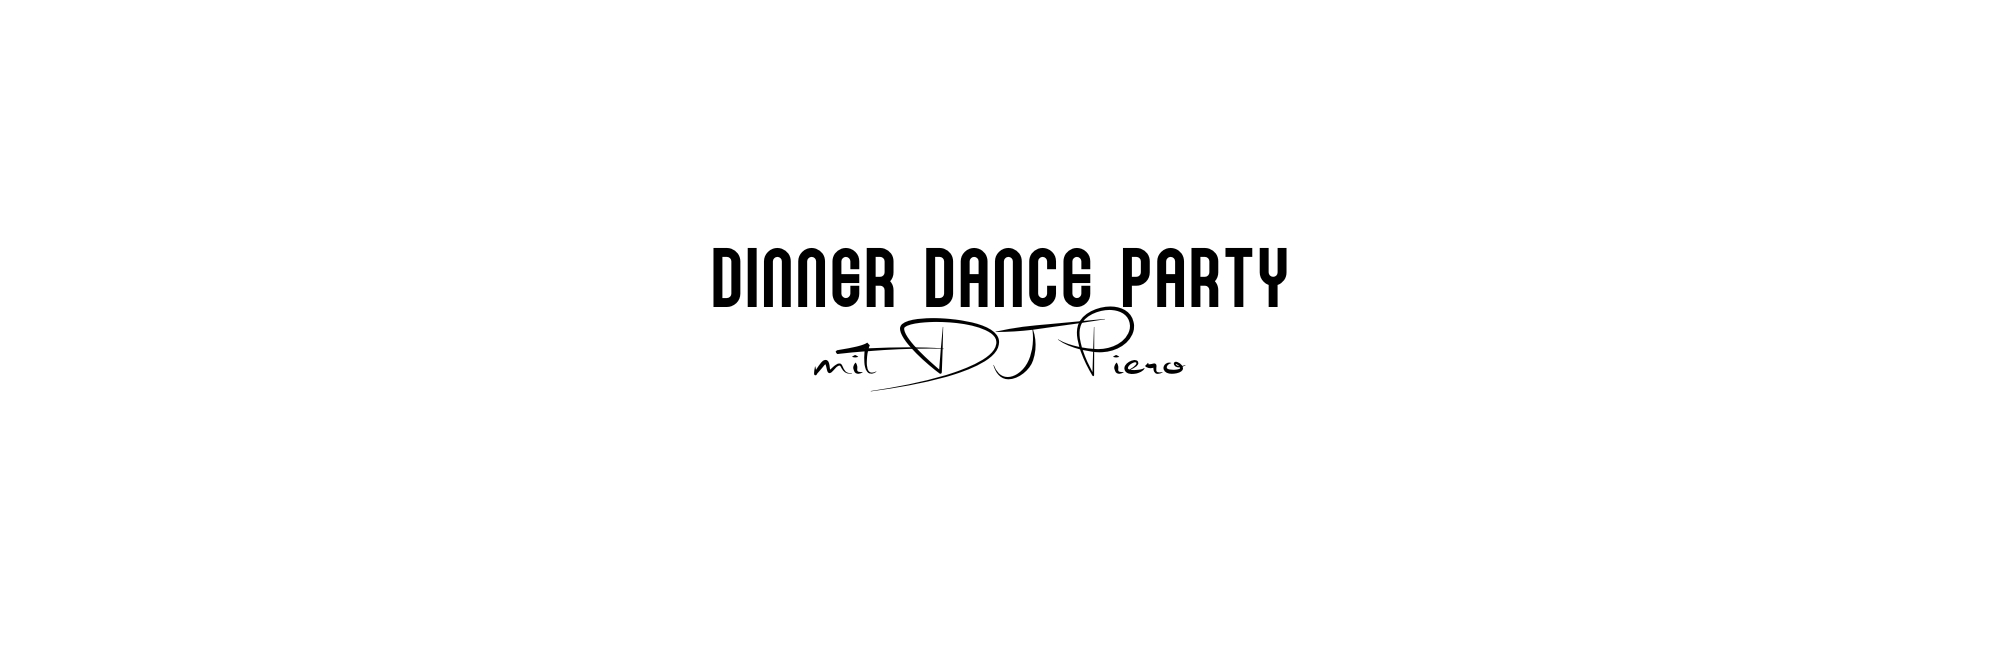 Dinner Dance Party mit DJ Piero